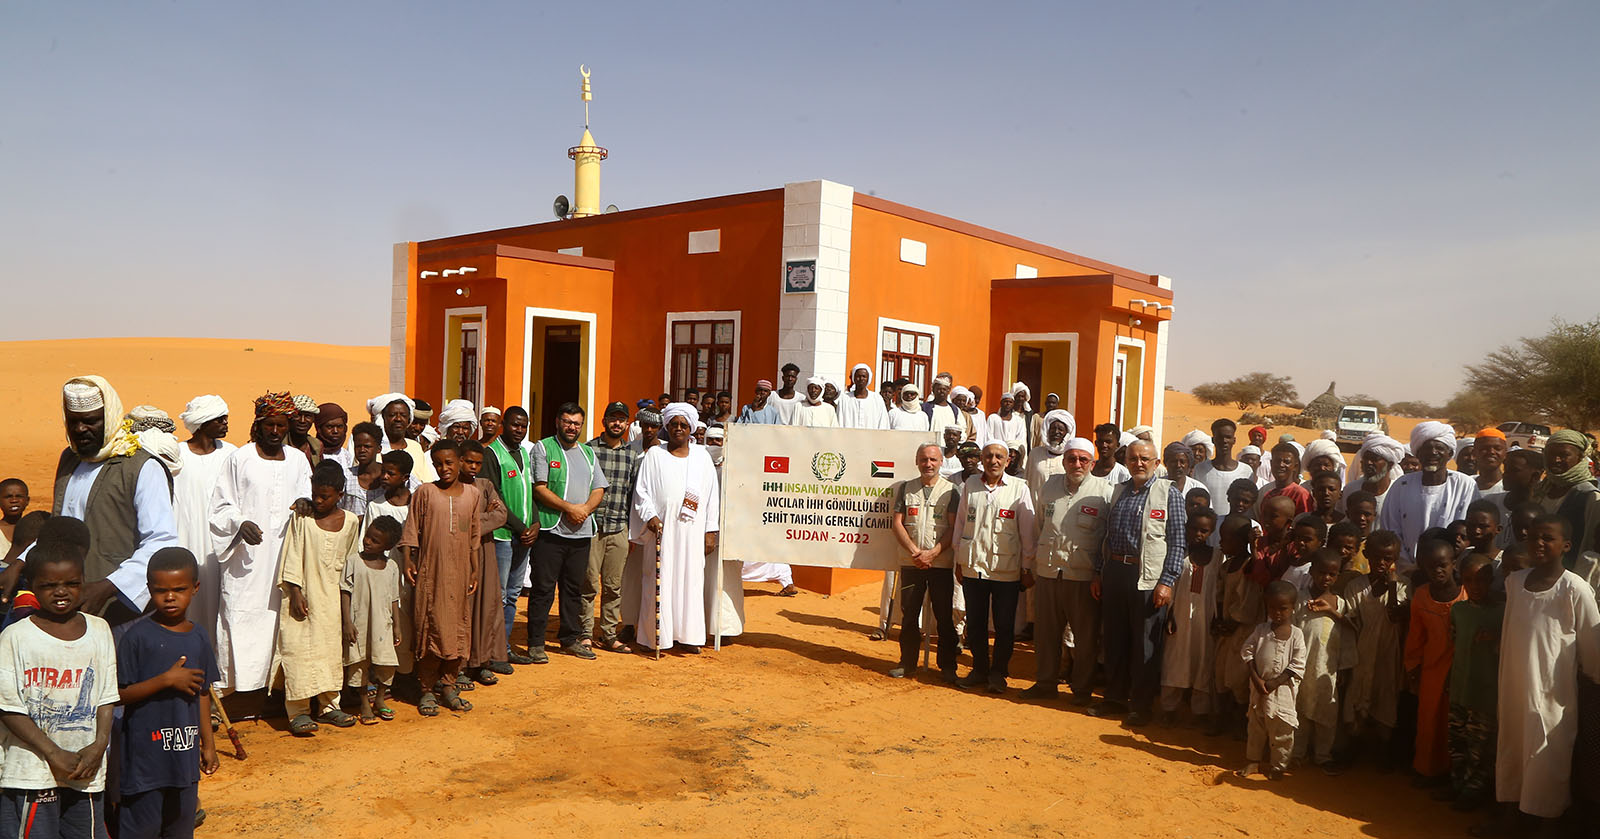 IHH تبني مسجداً في السودان